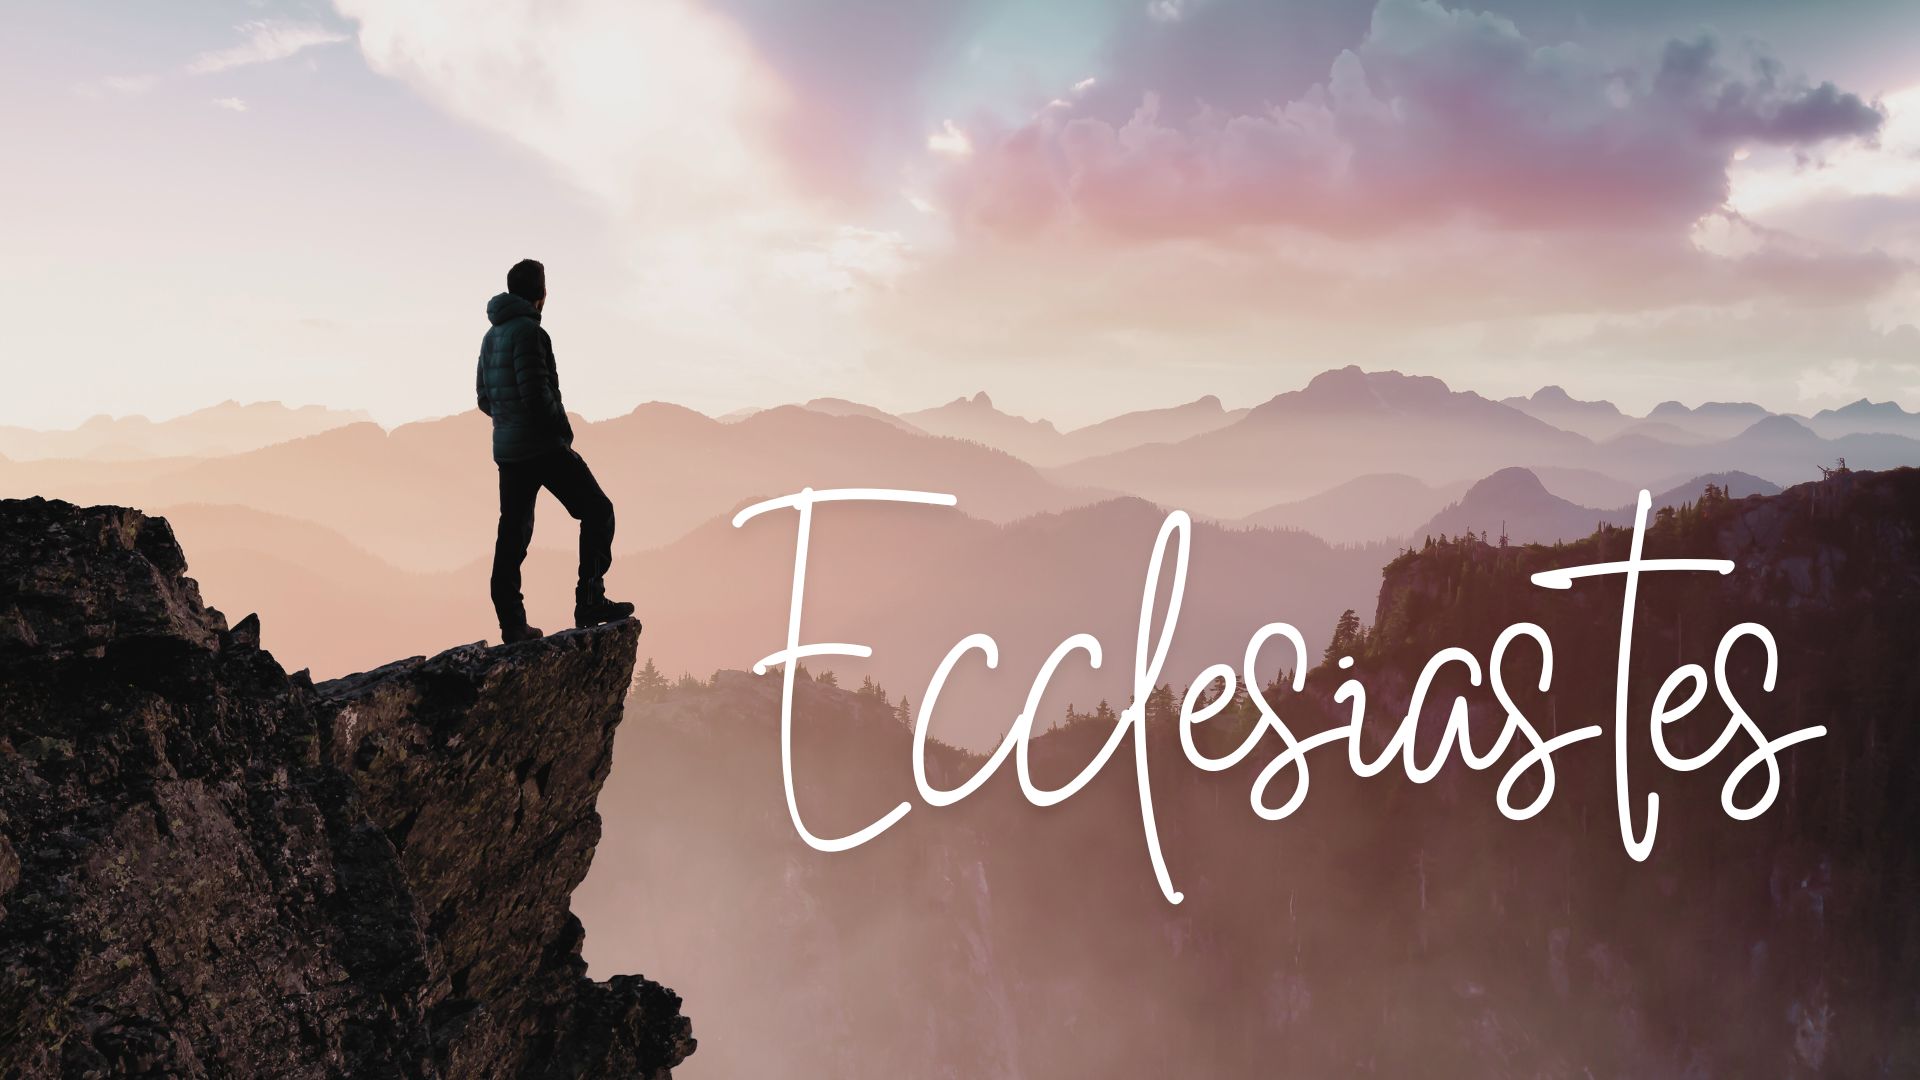 Ecclesiastes - no tag line